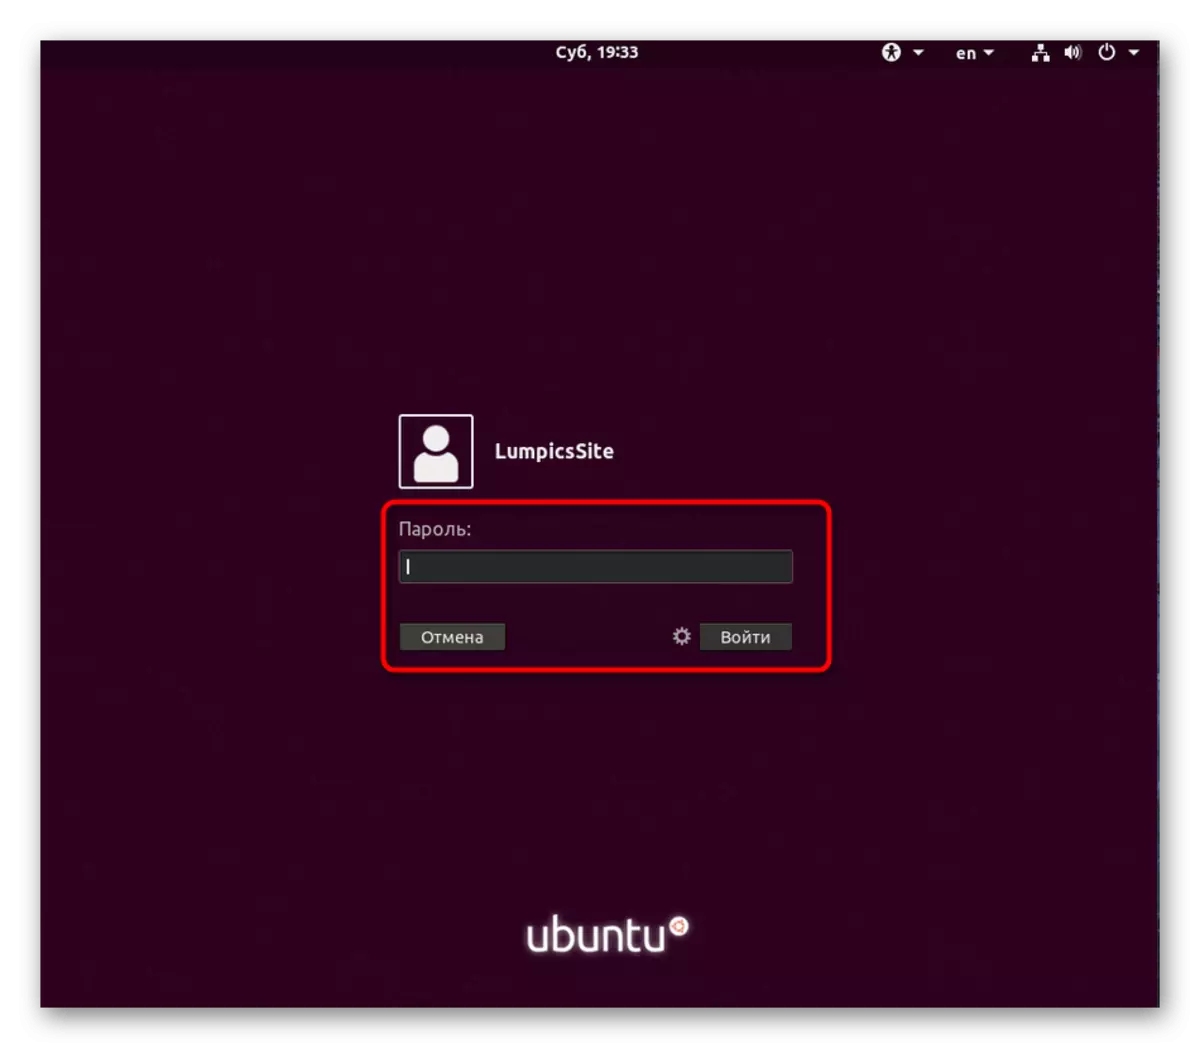 Digite a senha para autorizar o usuário no Ubuntu